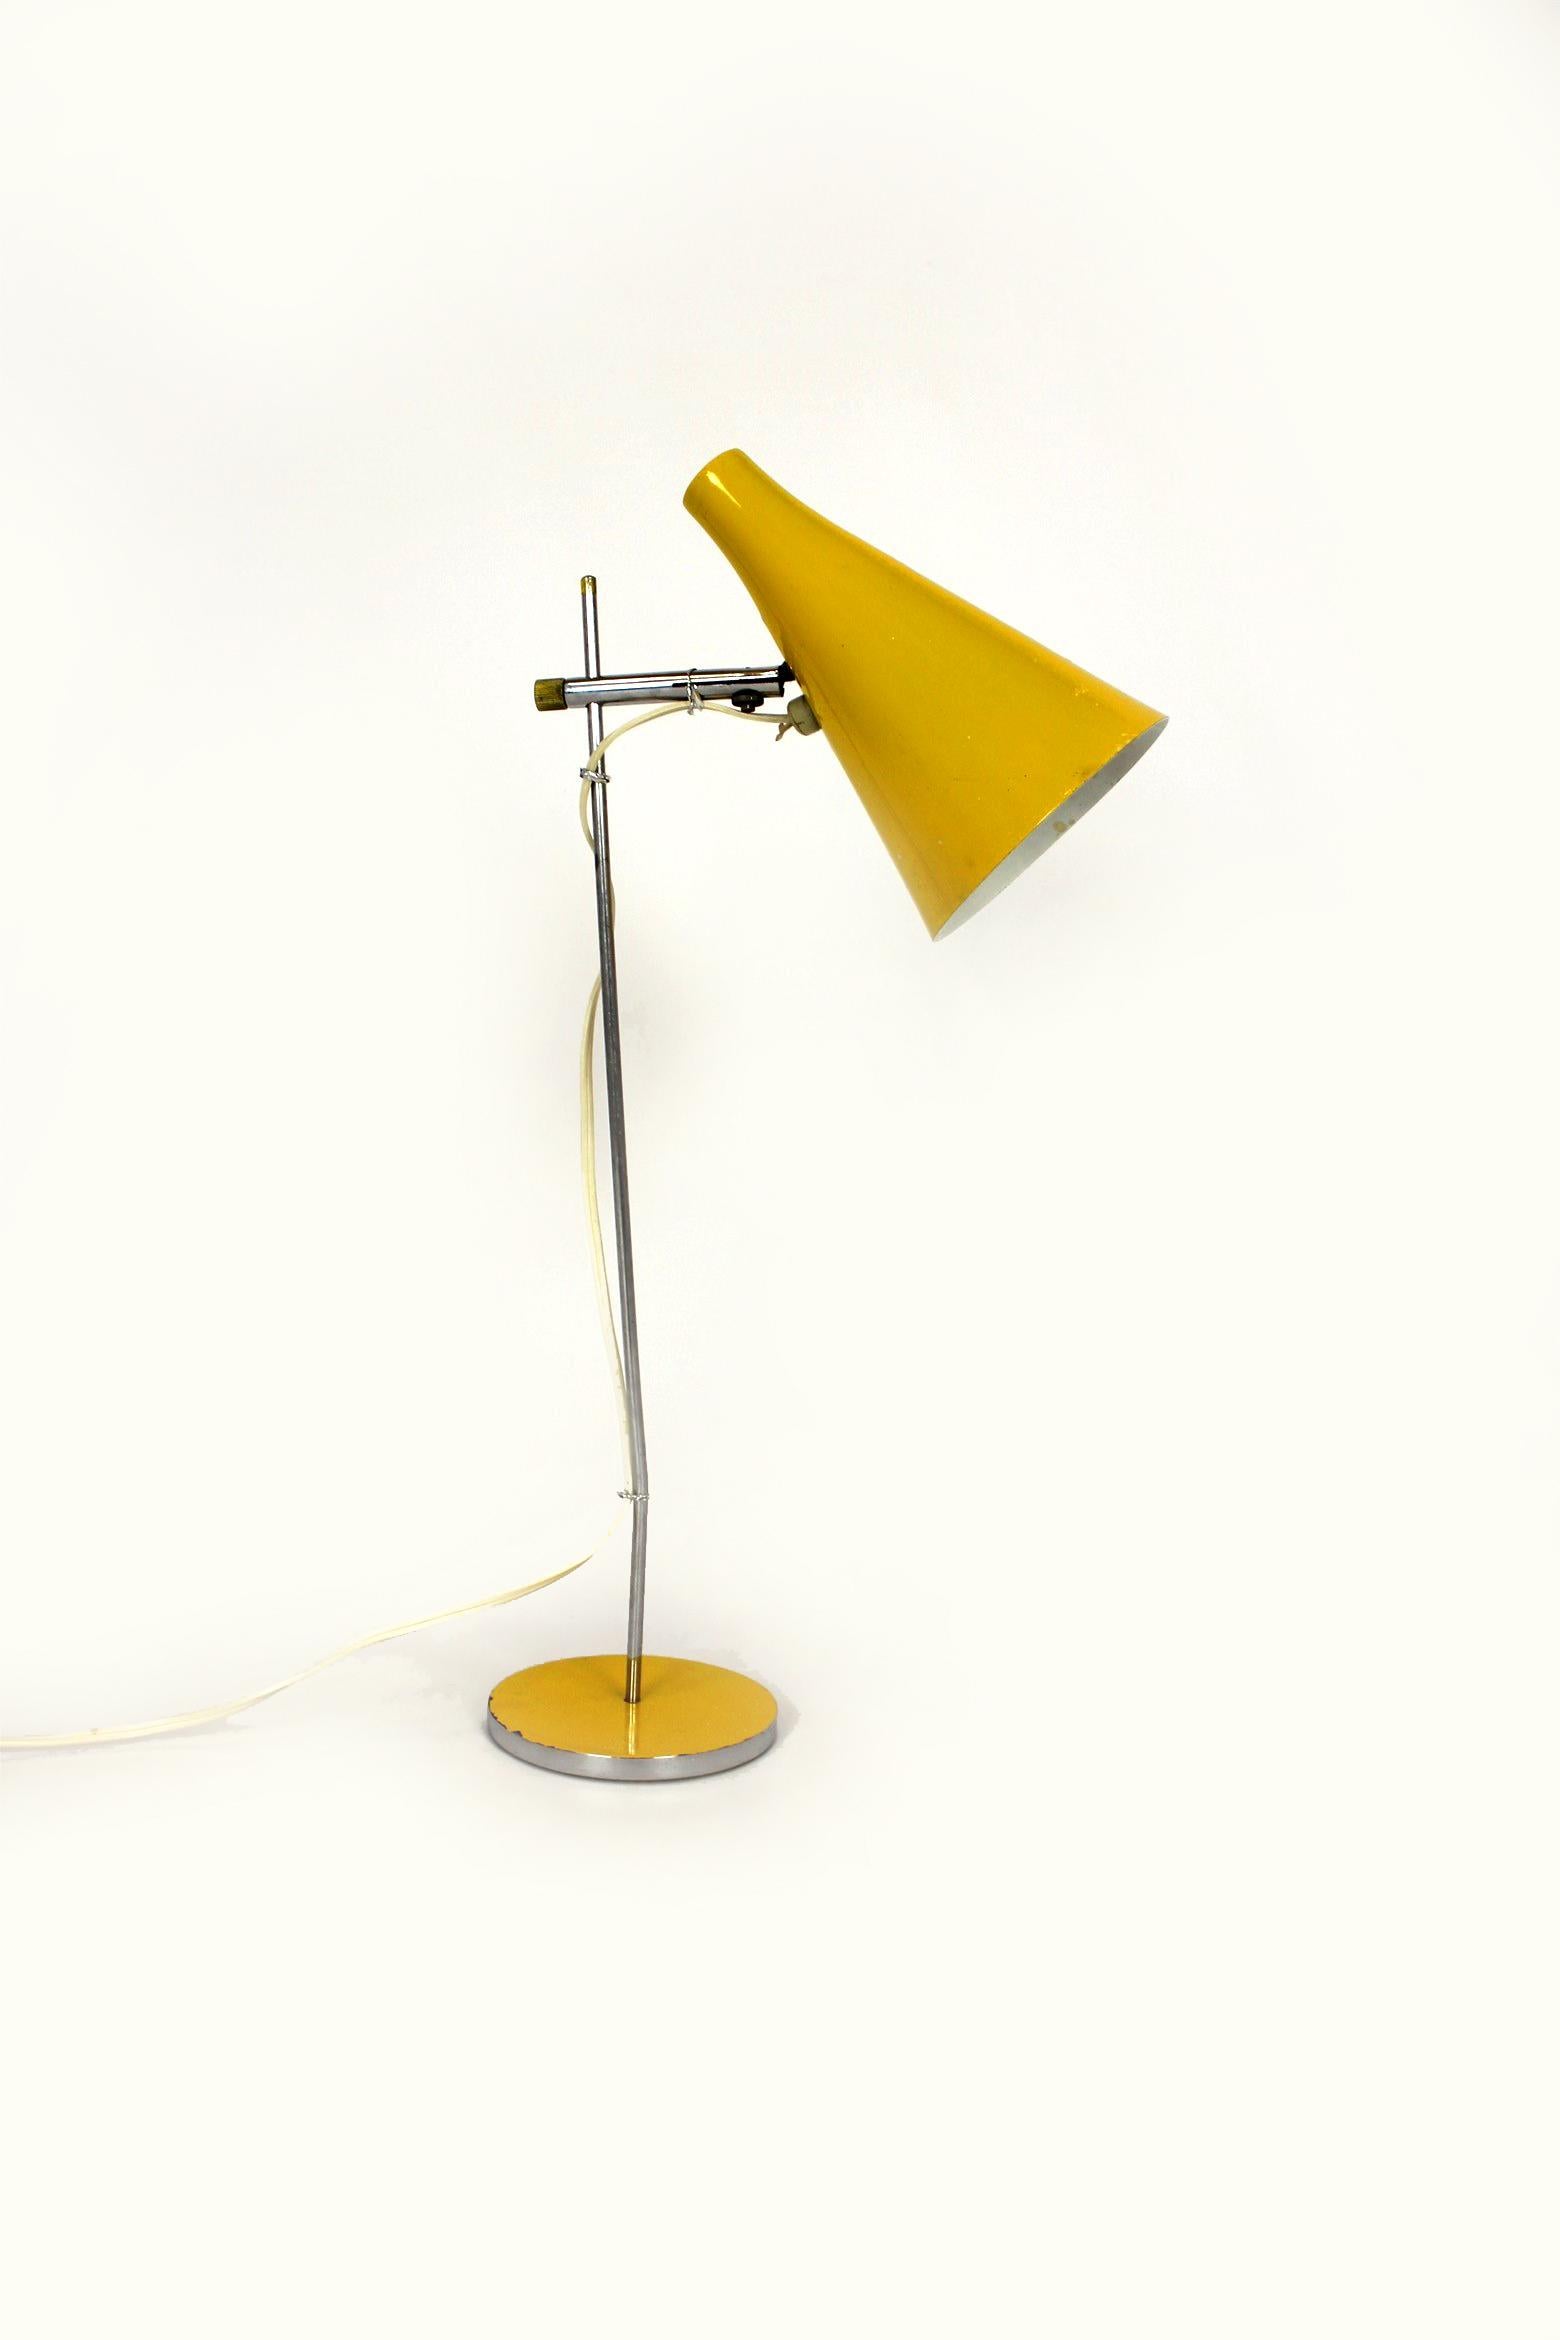 Cette lampe de table a été conçue par Josef Hurka et produite par Lidokov dans les années 1970. L'abat-jour est réglable. La lampe est en état de fonctionnement d'origine.